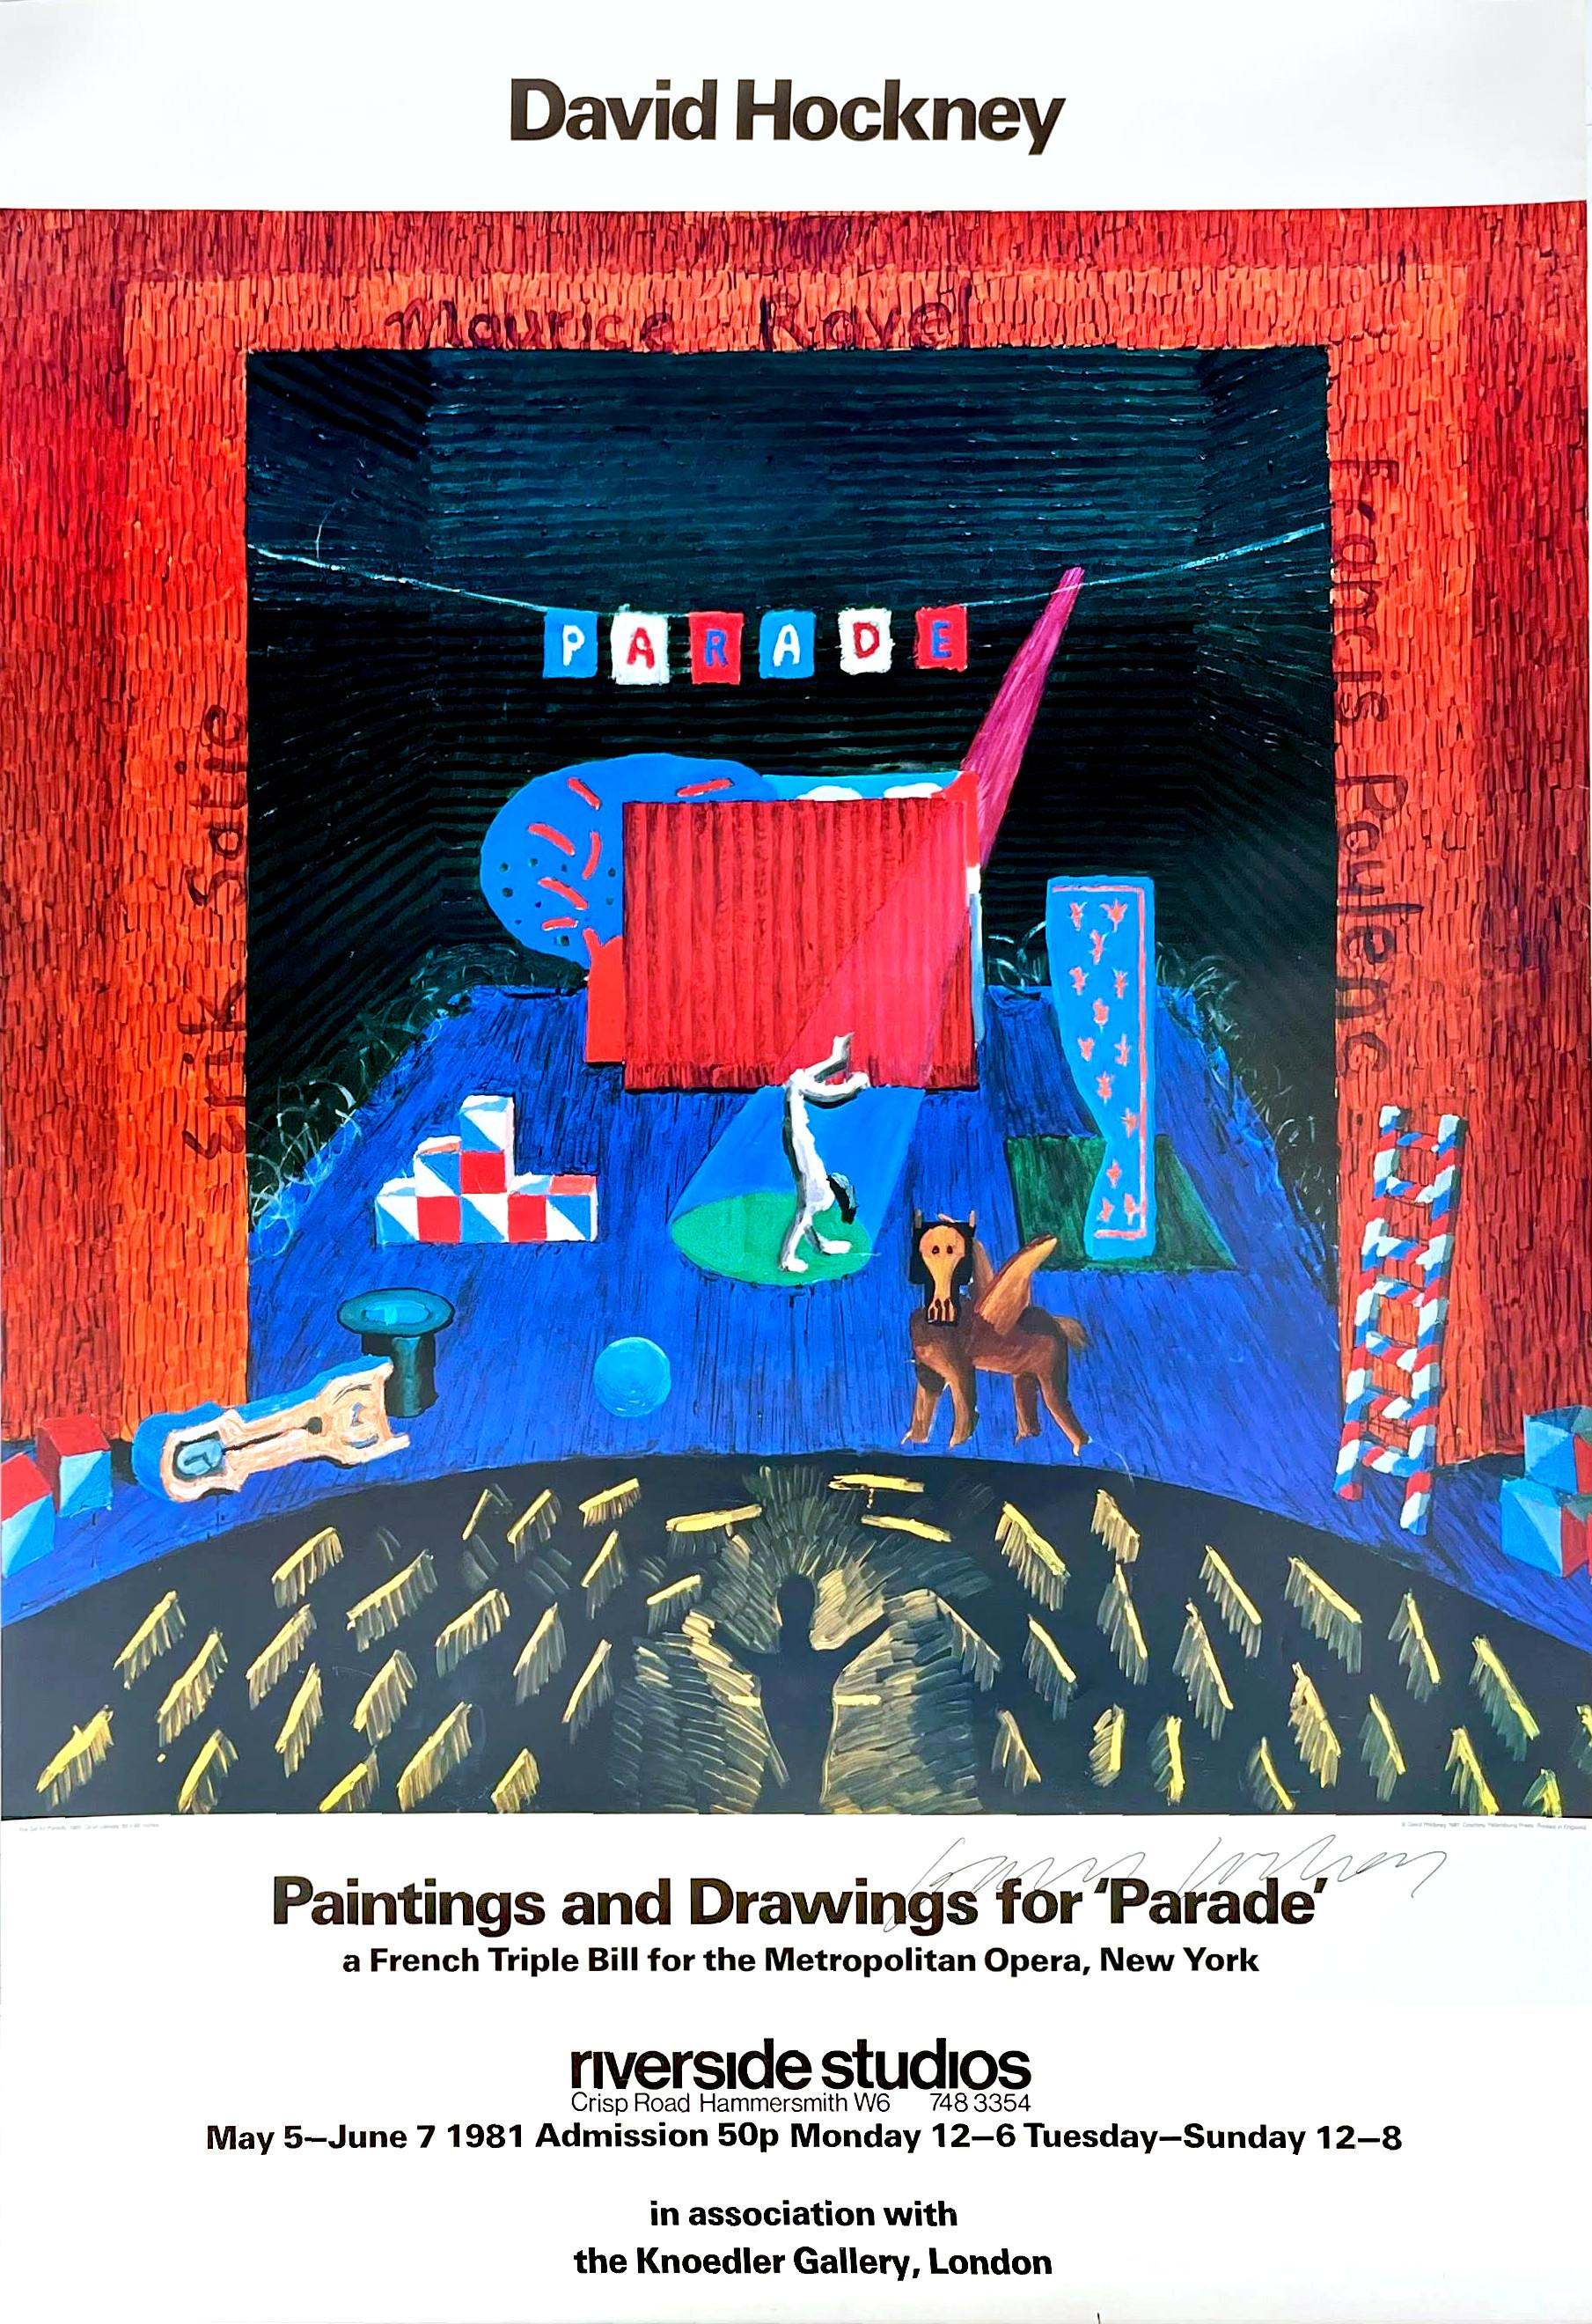 Gemälde und Zeichnungen für Paradeplakat (Handsigniert von David Hockney)